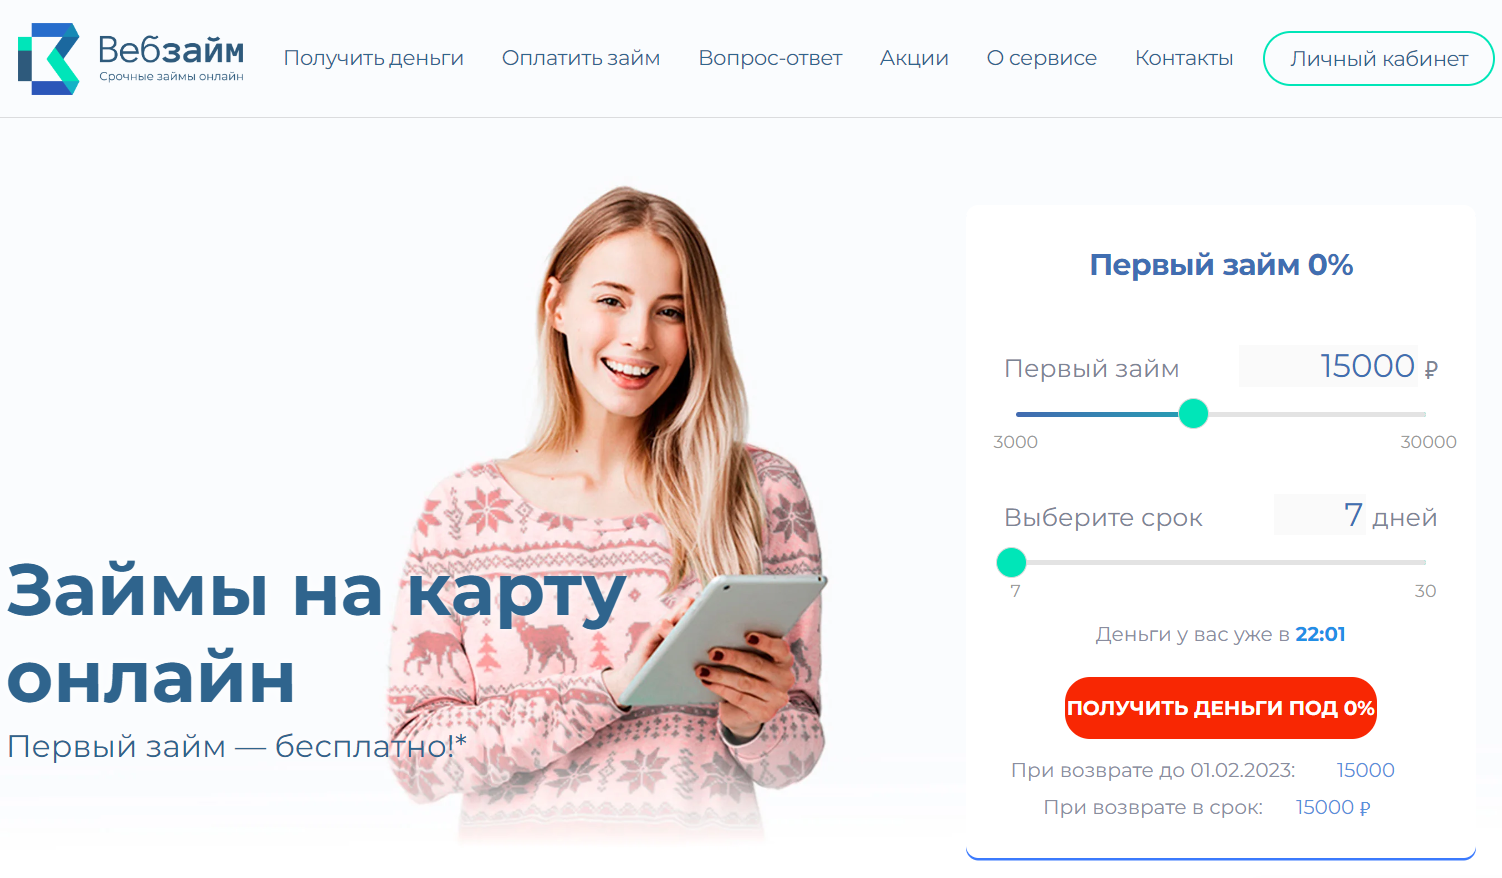 Веб-займ официальный сайт микрокредитной компании